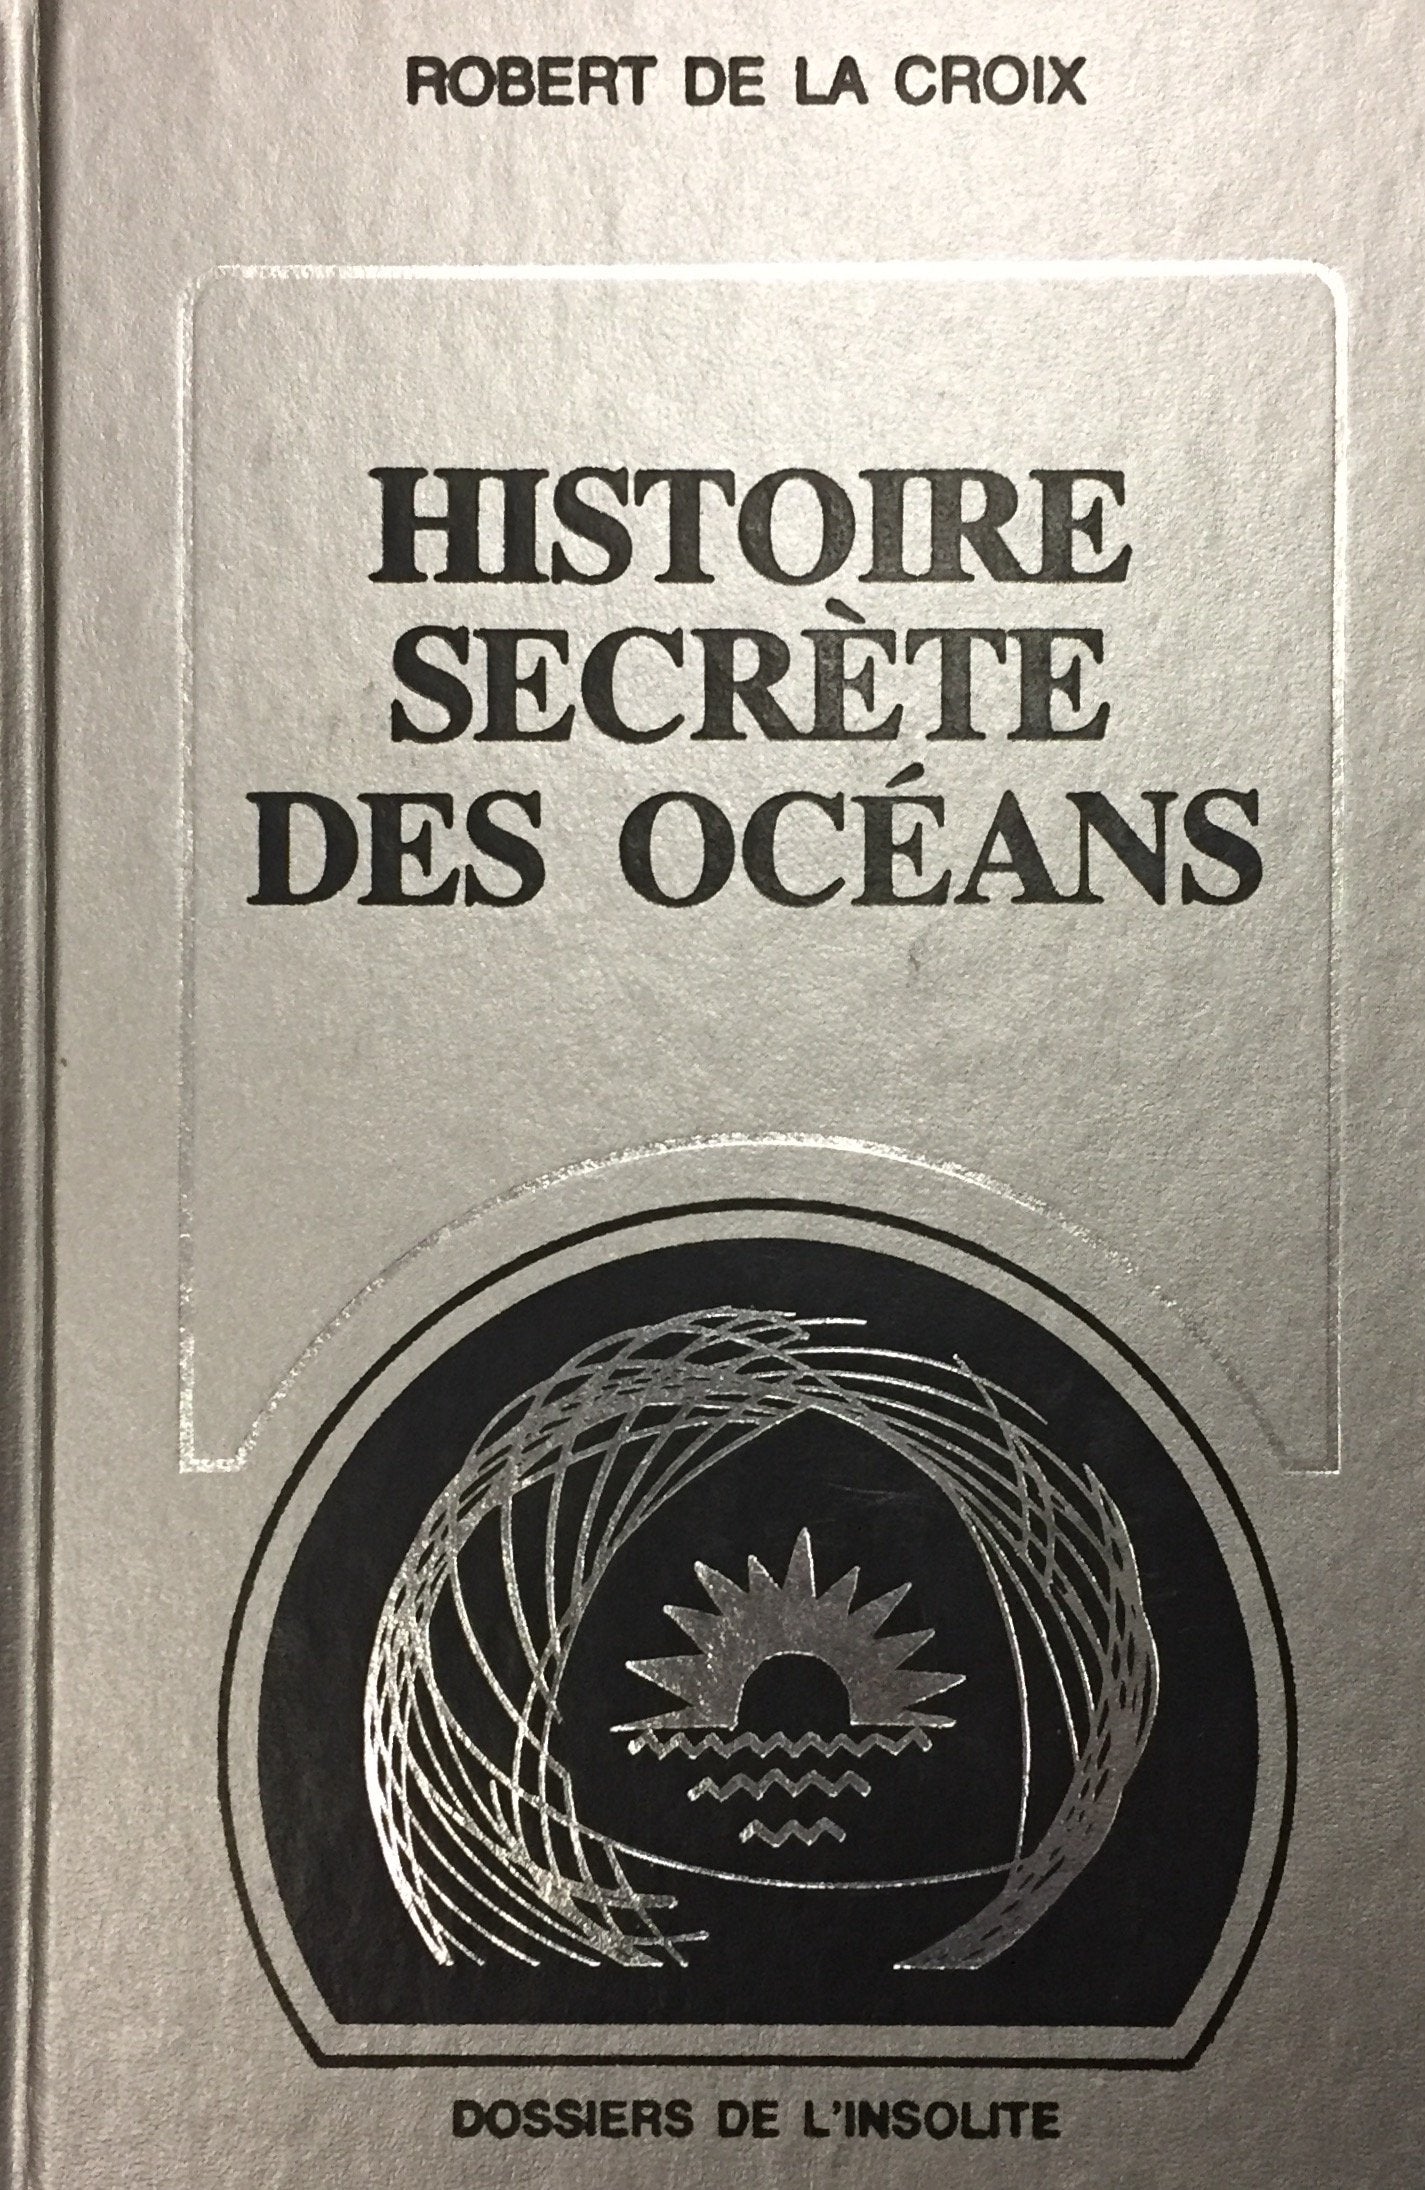 Livre ISBN 2891491904 Dossiers de l'insolite : Histoire secrète des océans (Robert De La Croix)